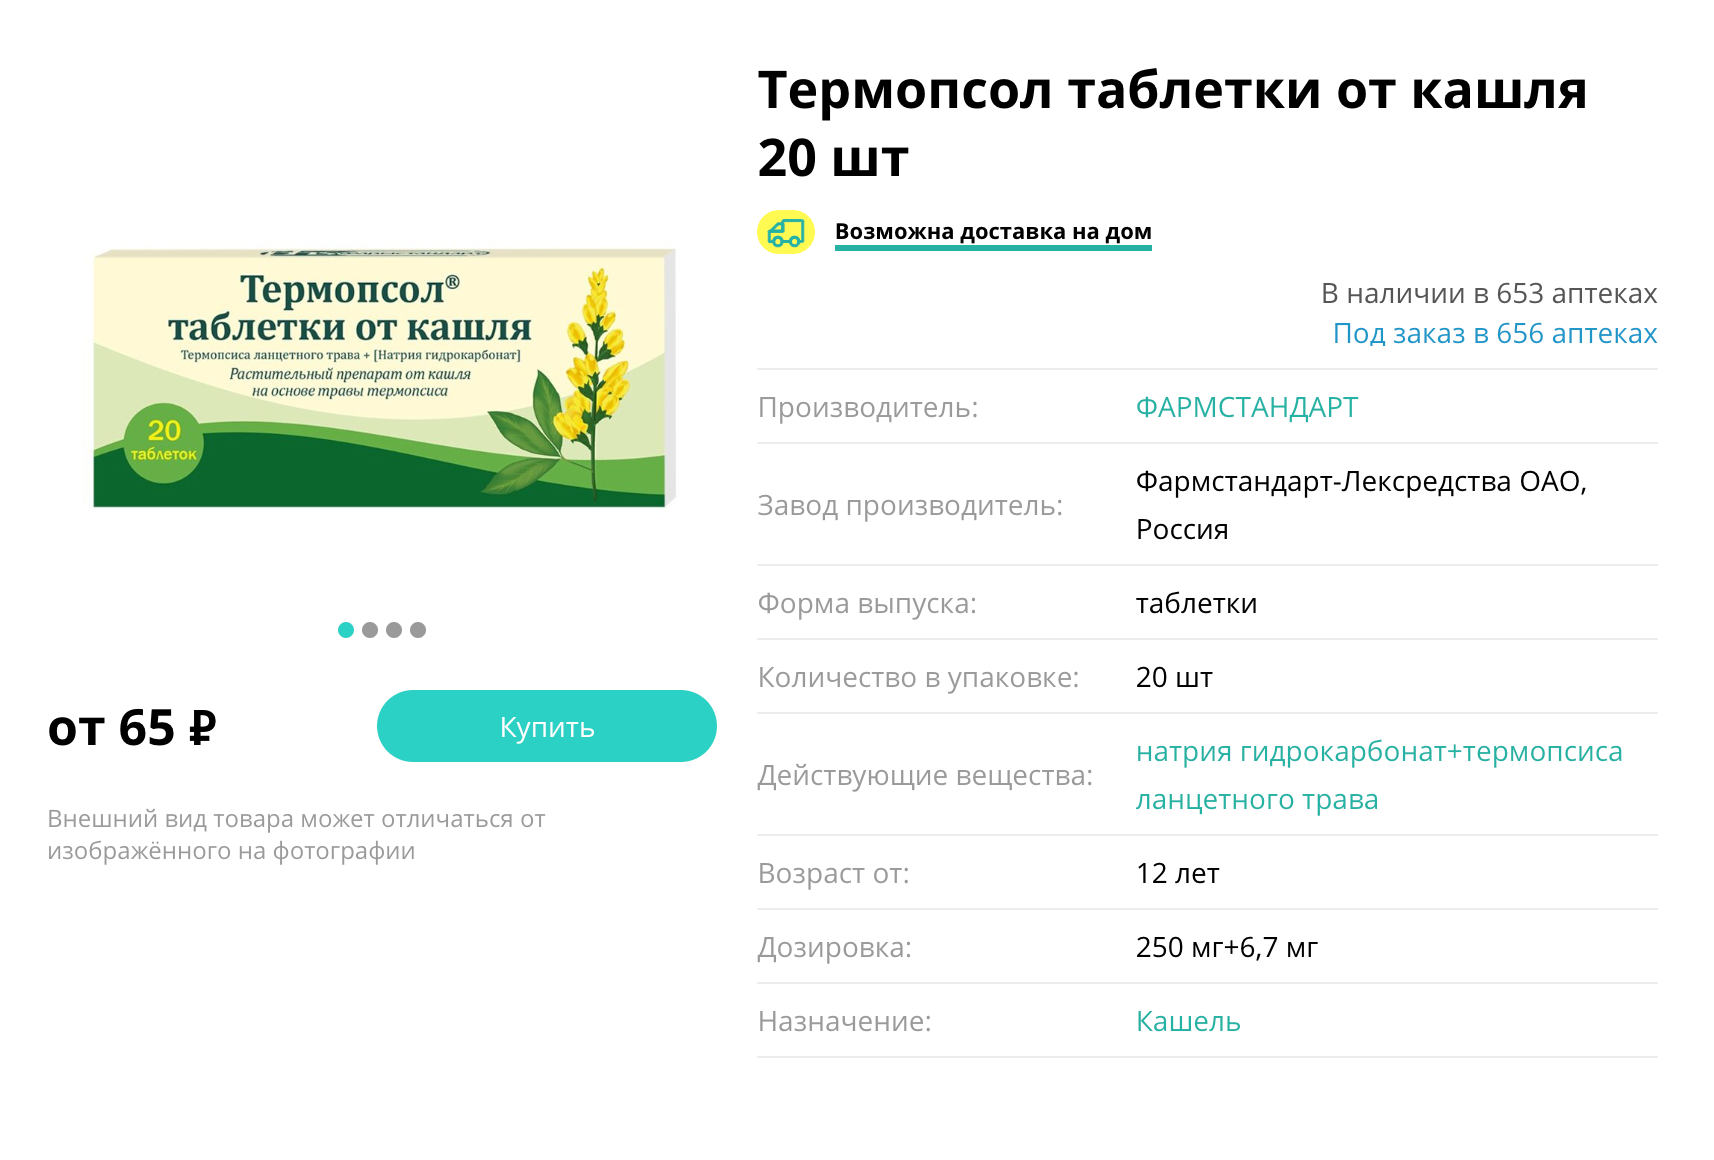 Фитопрепараты от кашля не обладают доказанной эффективностью и безопасностью. Источник: planetazdorovo.ru